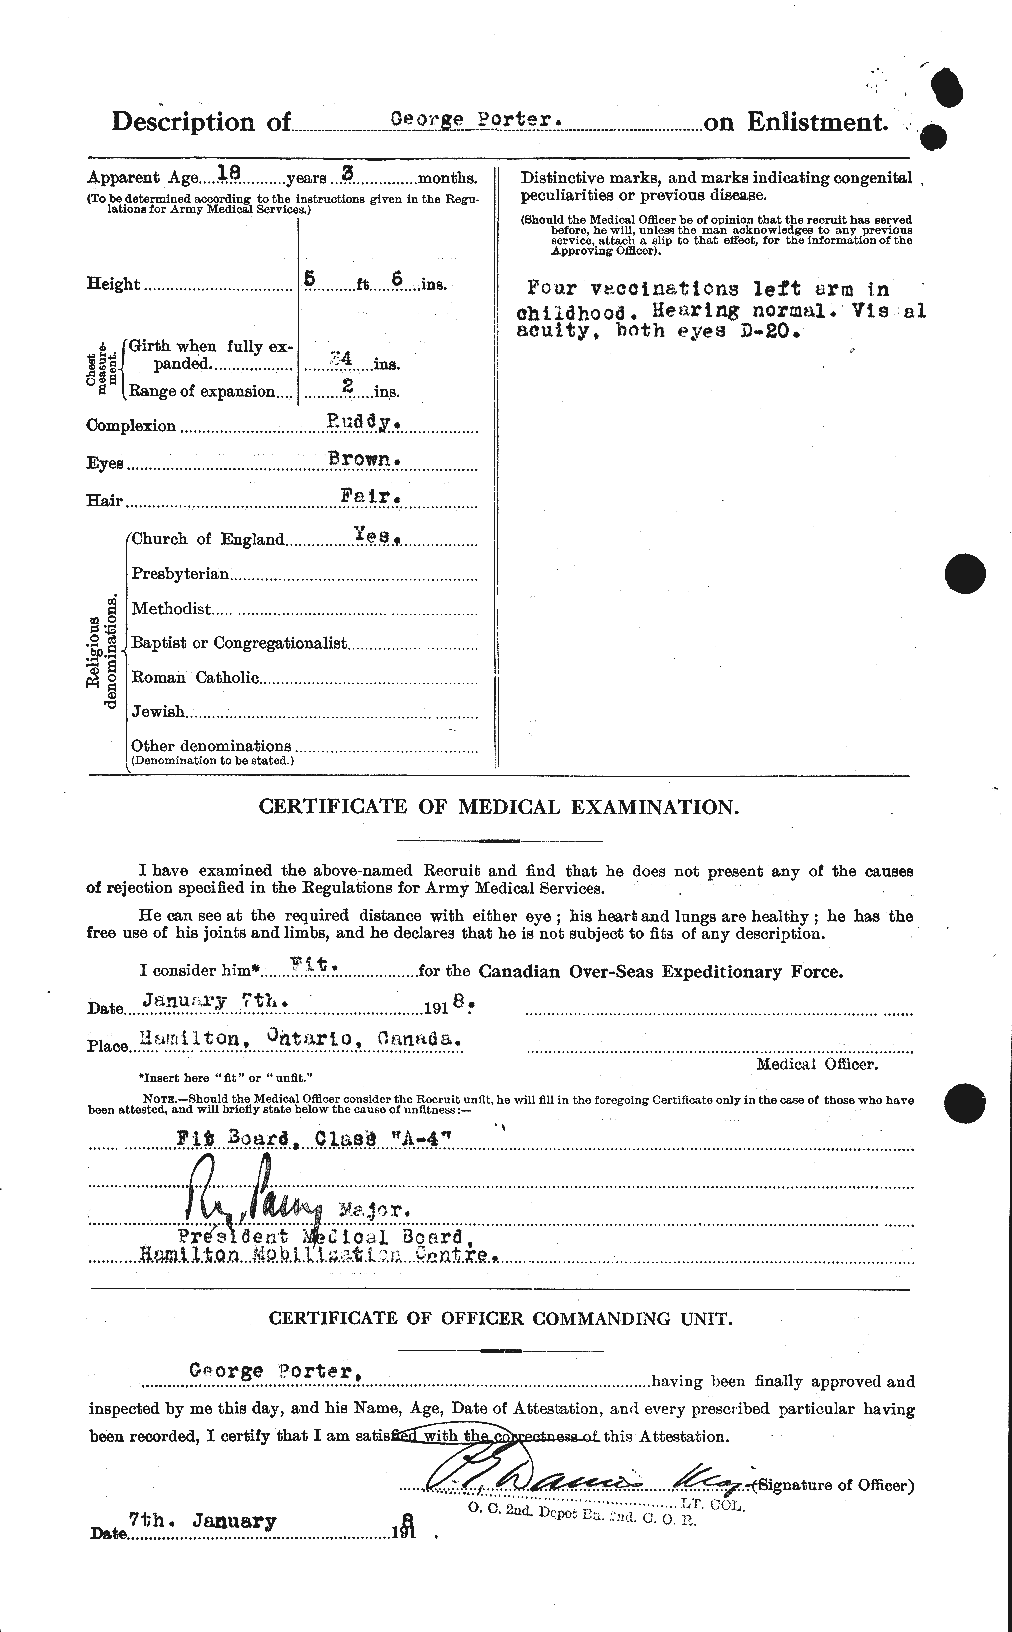 Dossiers du Personnel de la Première Guerre mondiale - CEC 583122b